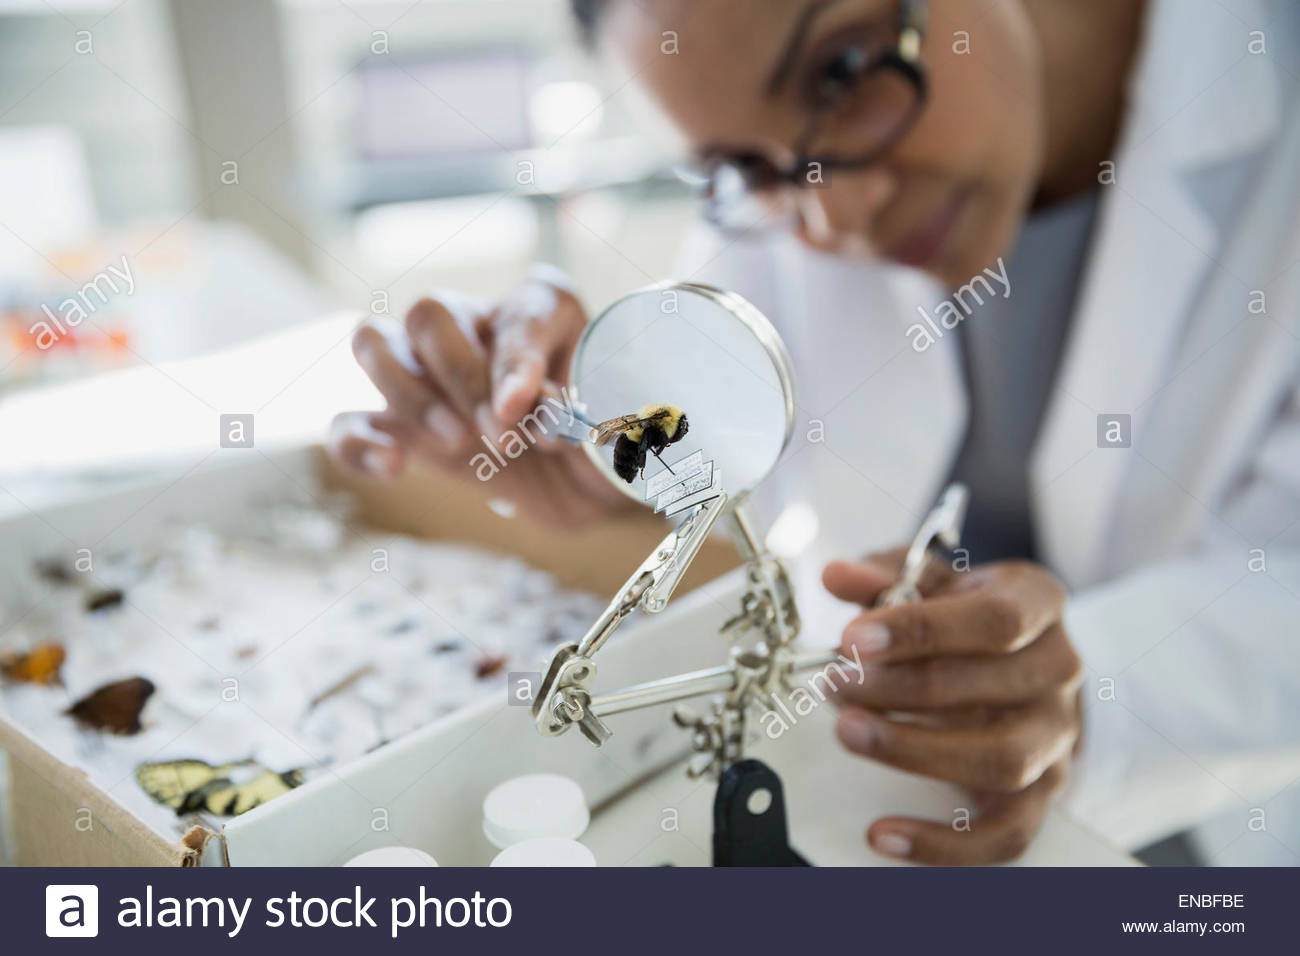 Scientist examining bee specimen under microscope Stock Photo